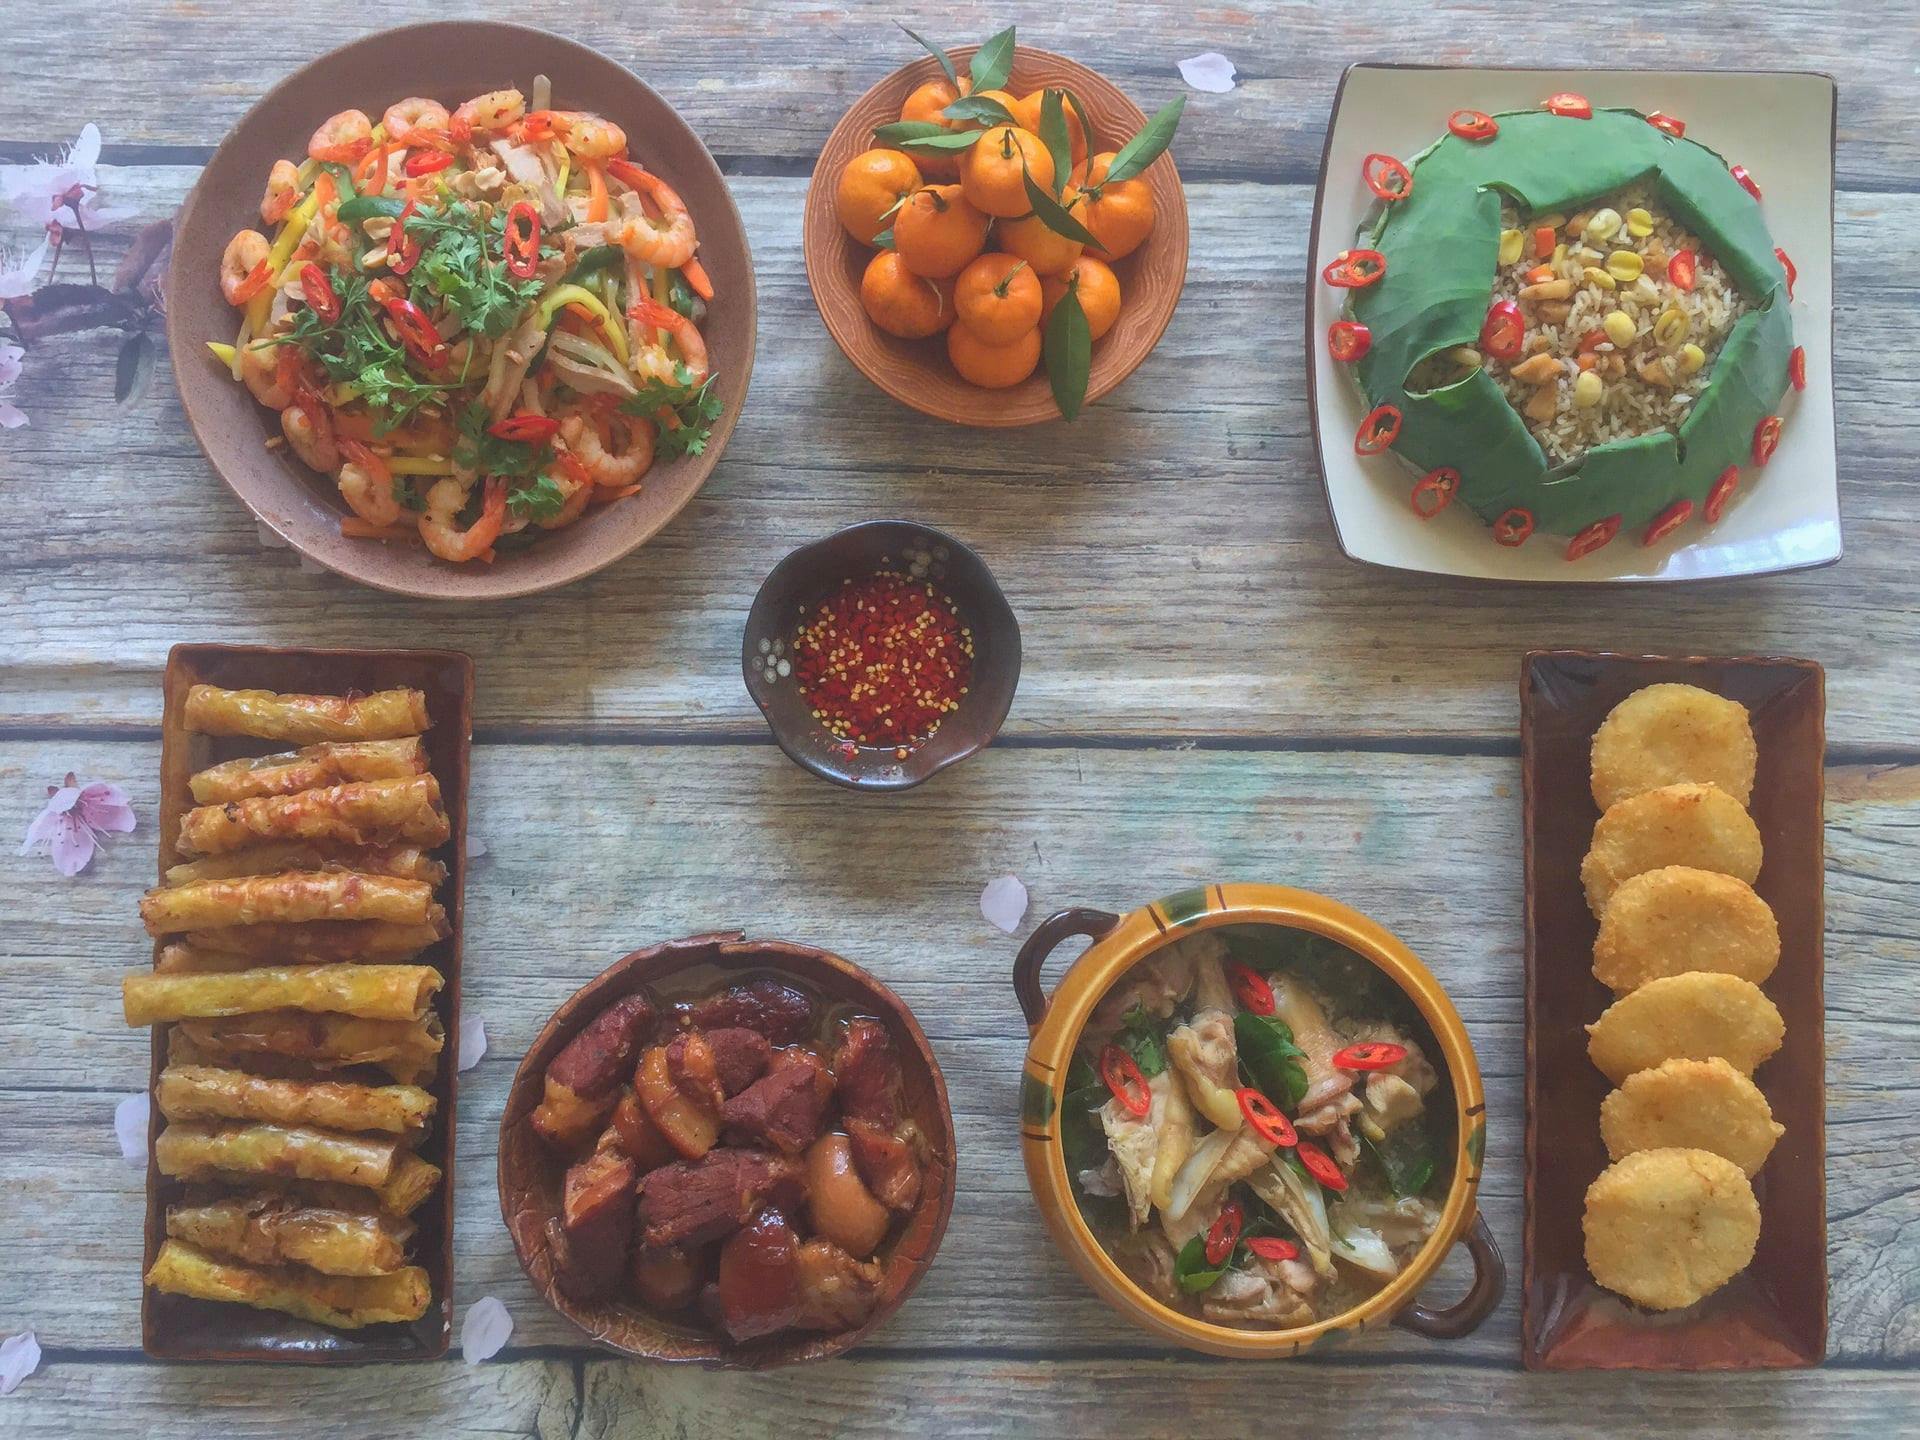 thực đơn cơm nhà,cách nấu cơm,mẹ đảm,Sài Gòn,món ngon mỗi ngày